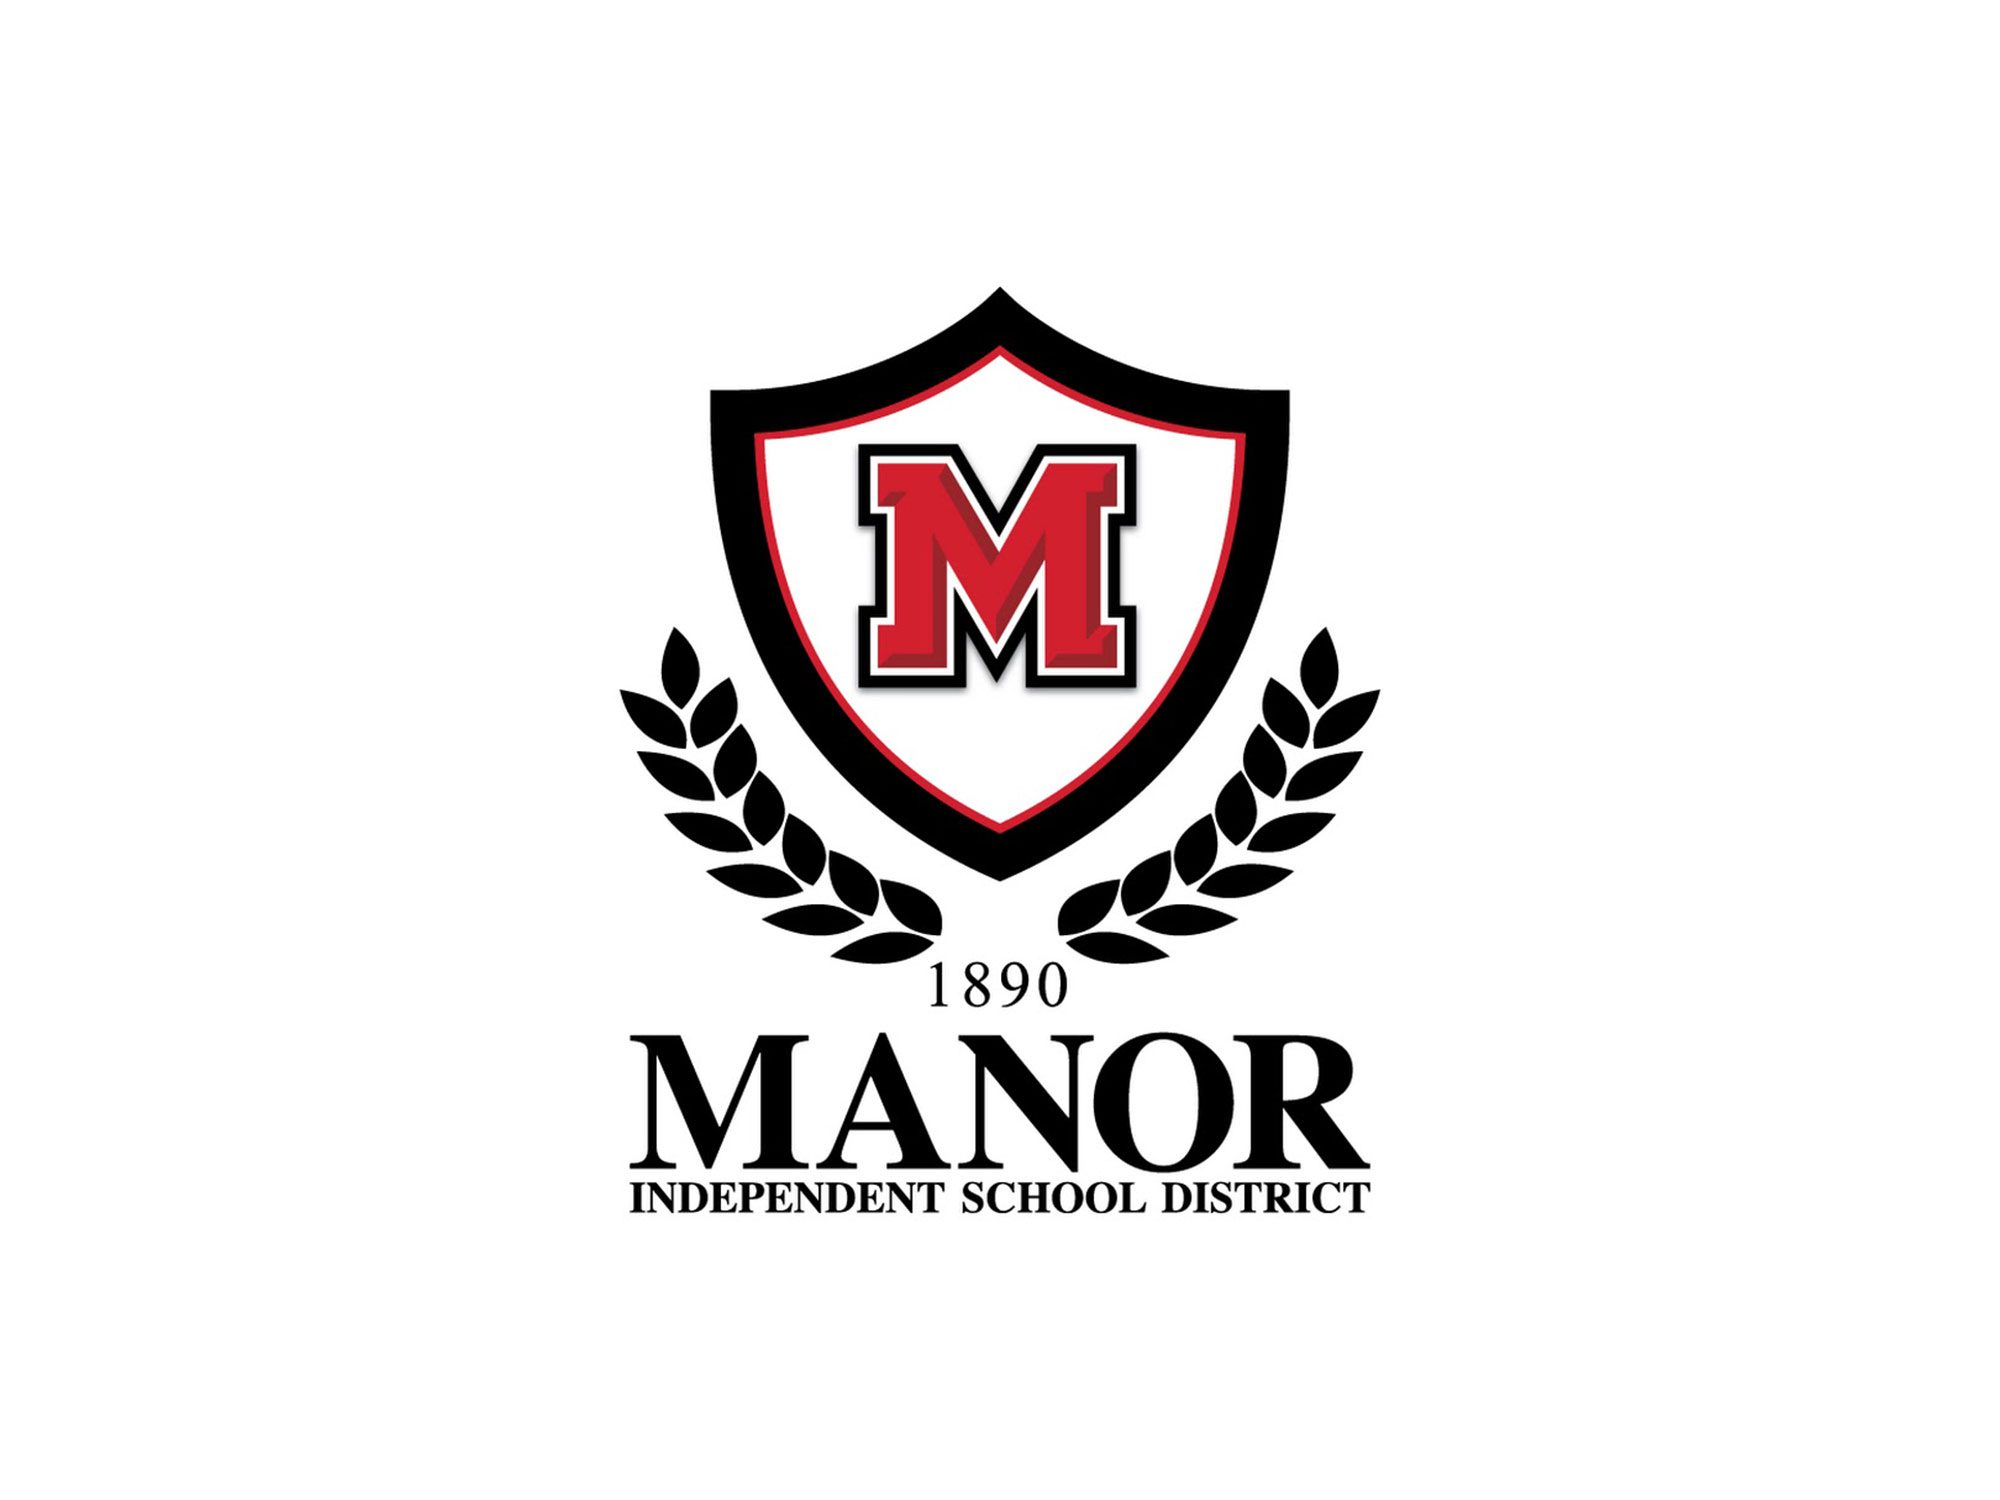 Manor Independent School District HPM